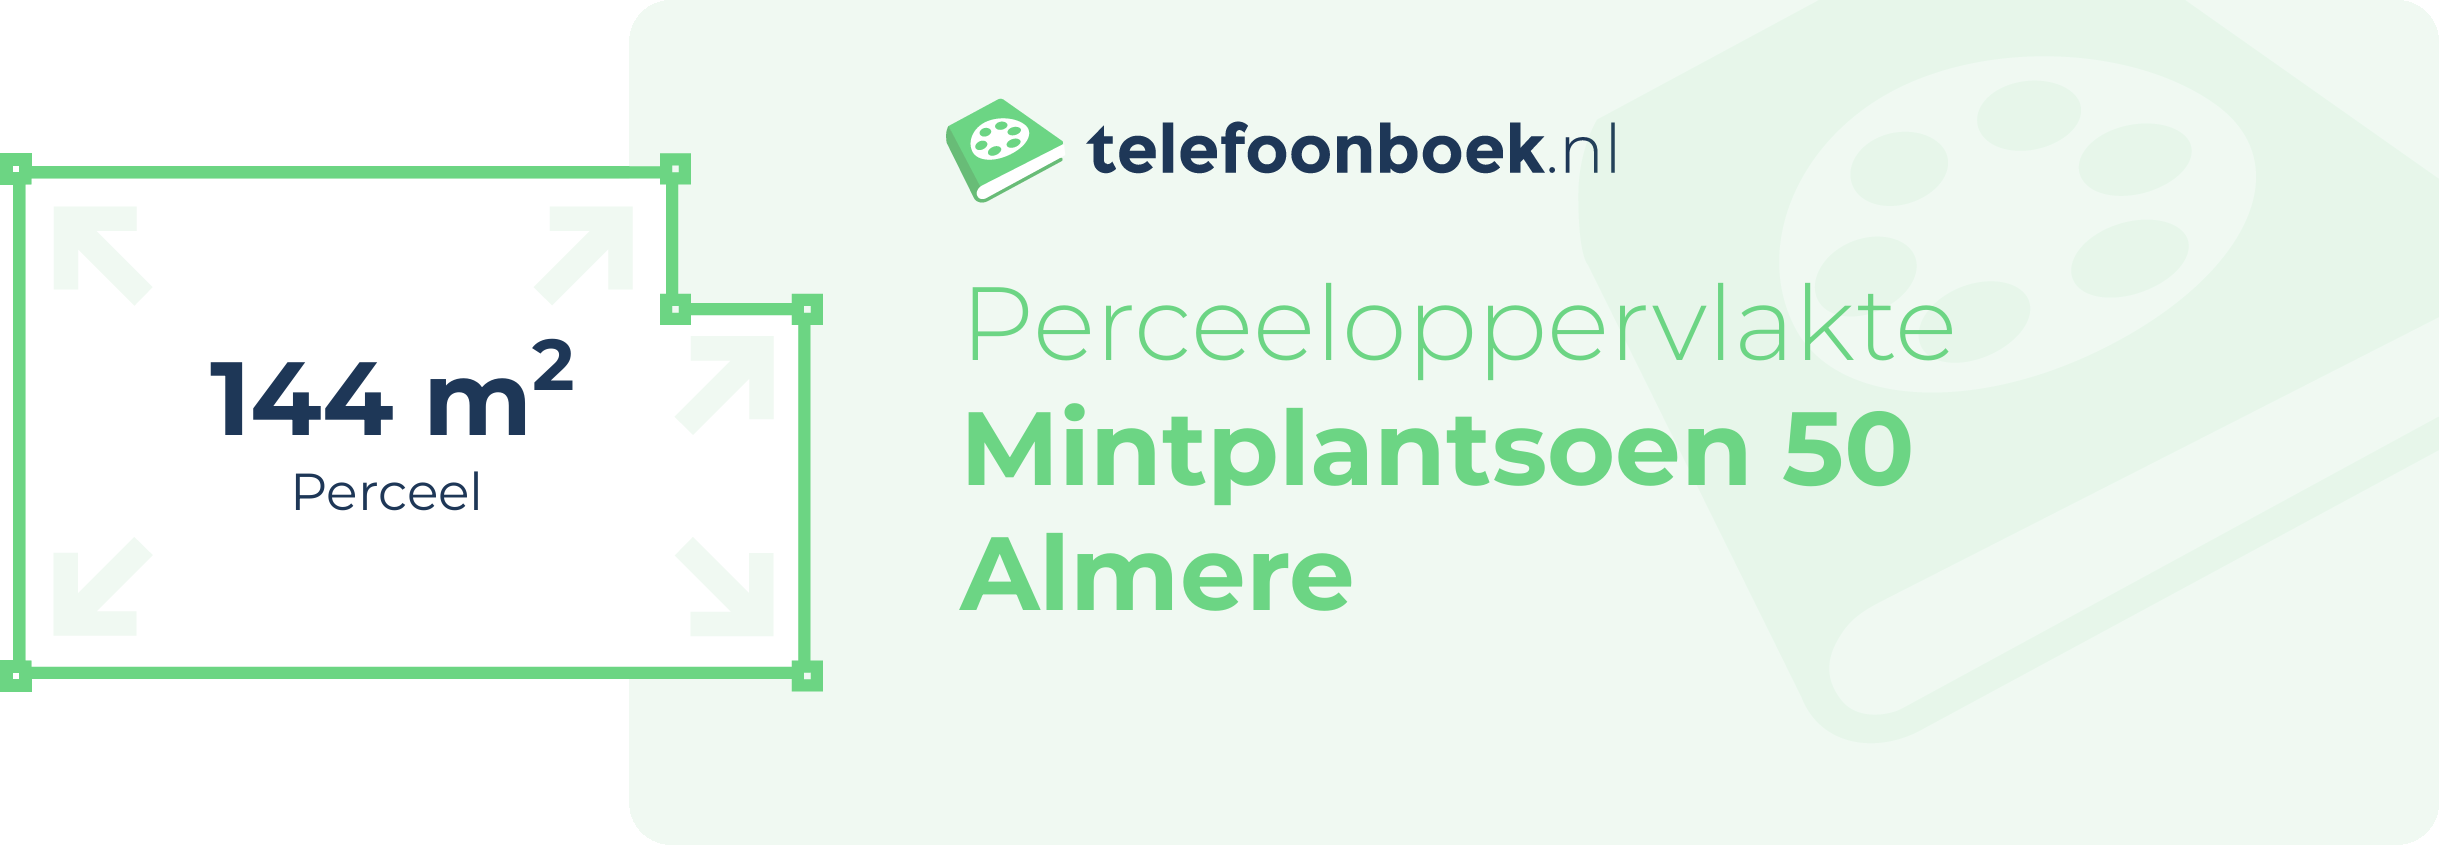 Perceeloppervlakte Mintplantsoen 50 Almere